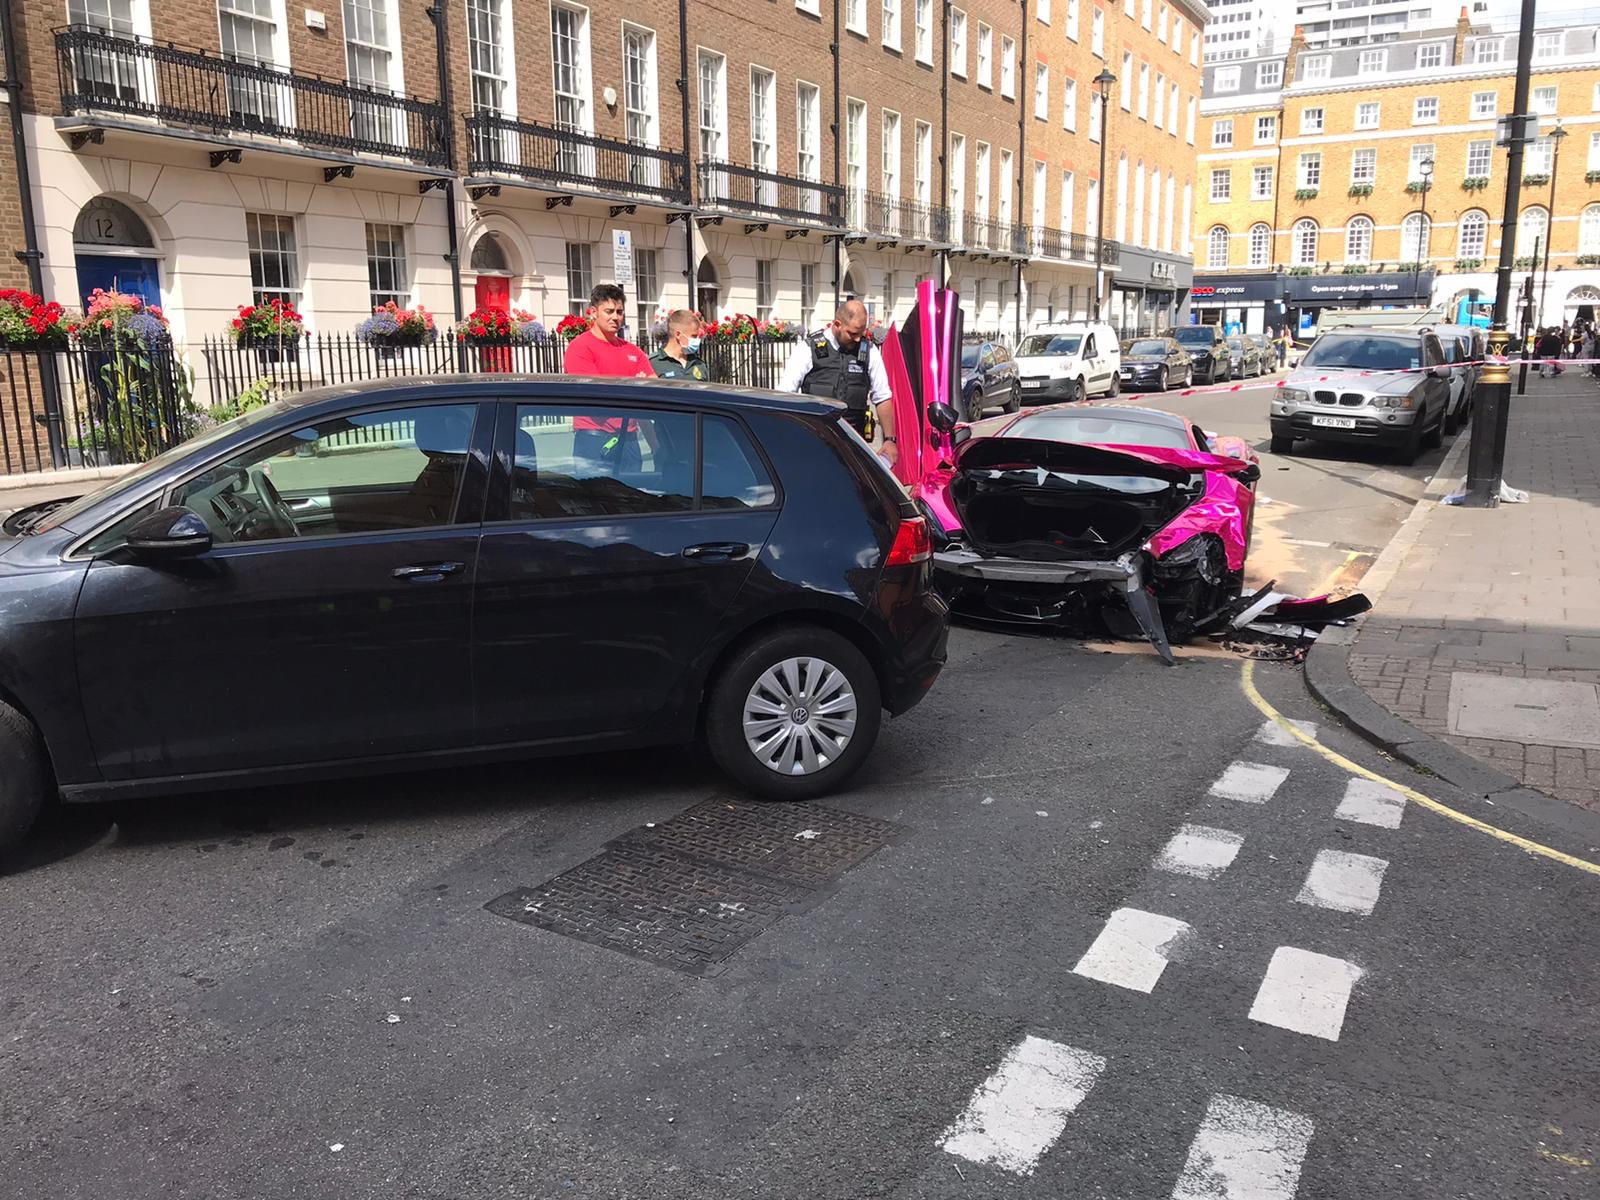 Владелец этого привлекательного розового McLaren 570S явно хотел выделиться из толпы, но он привлек больше внимания, чем рассчитывали, после того, как разбил среднемоторный суперкар на одной из улиц Лондона. Фотографии аварии, произошедшей около особ